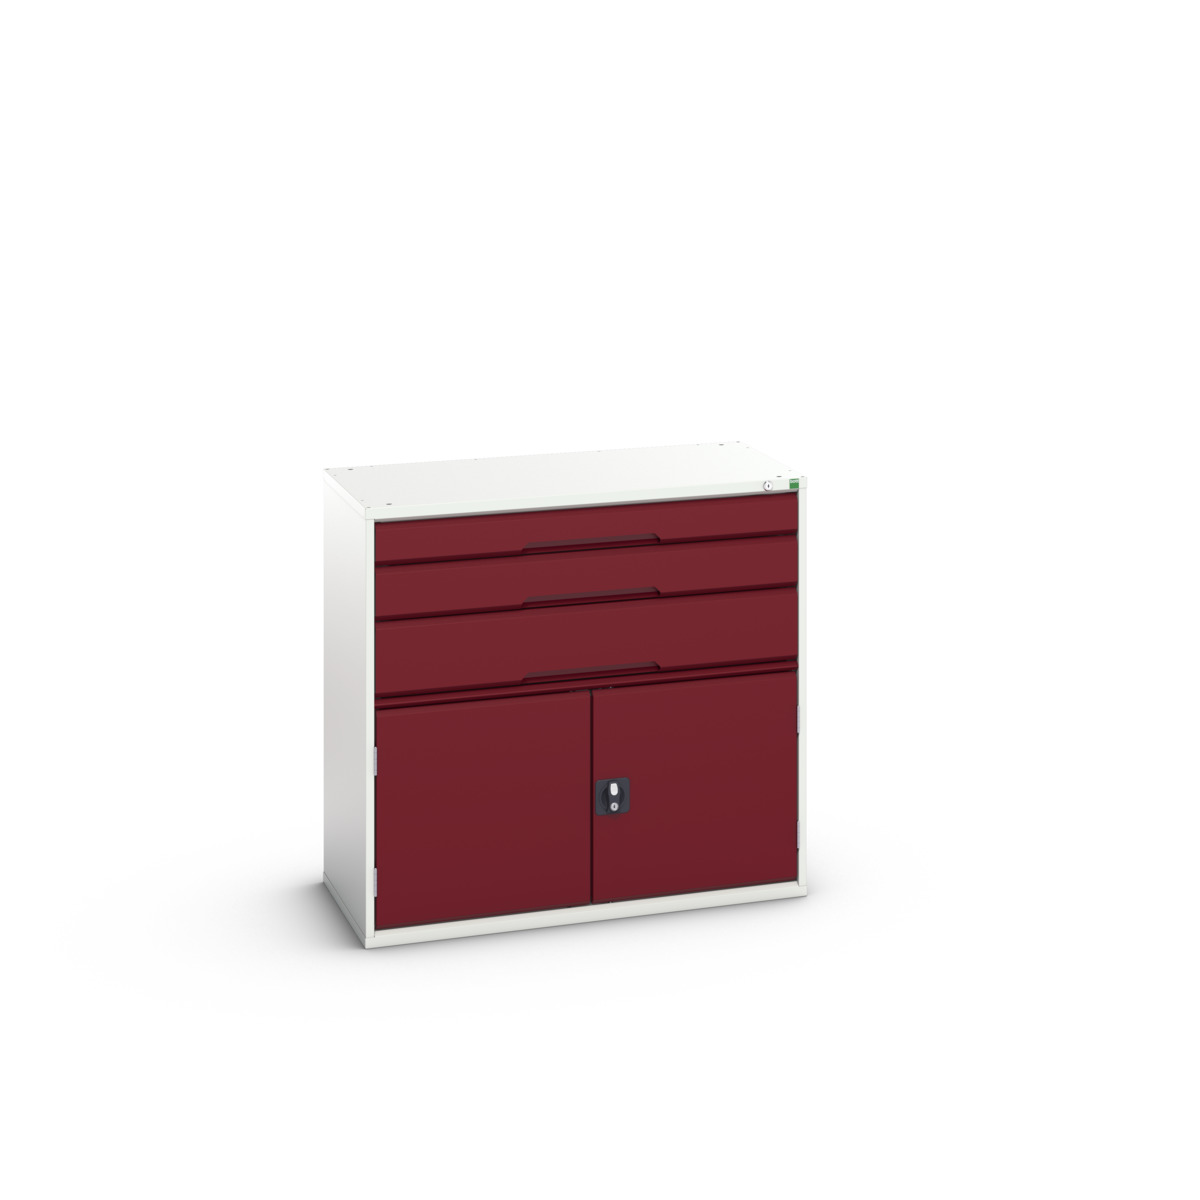 16925261.24 - verso drawer-door cabinet